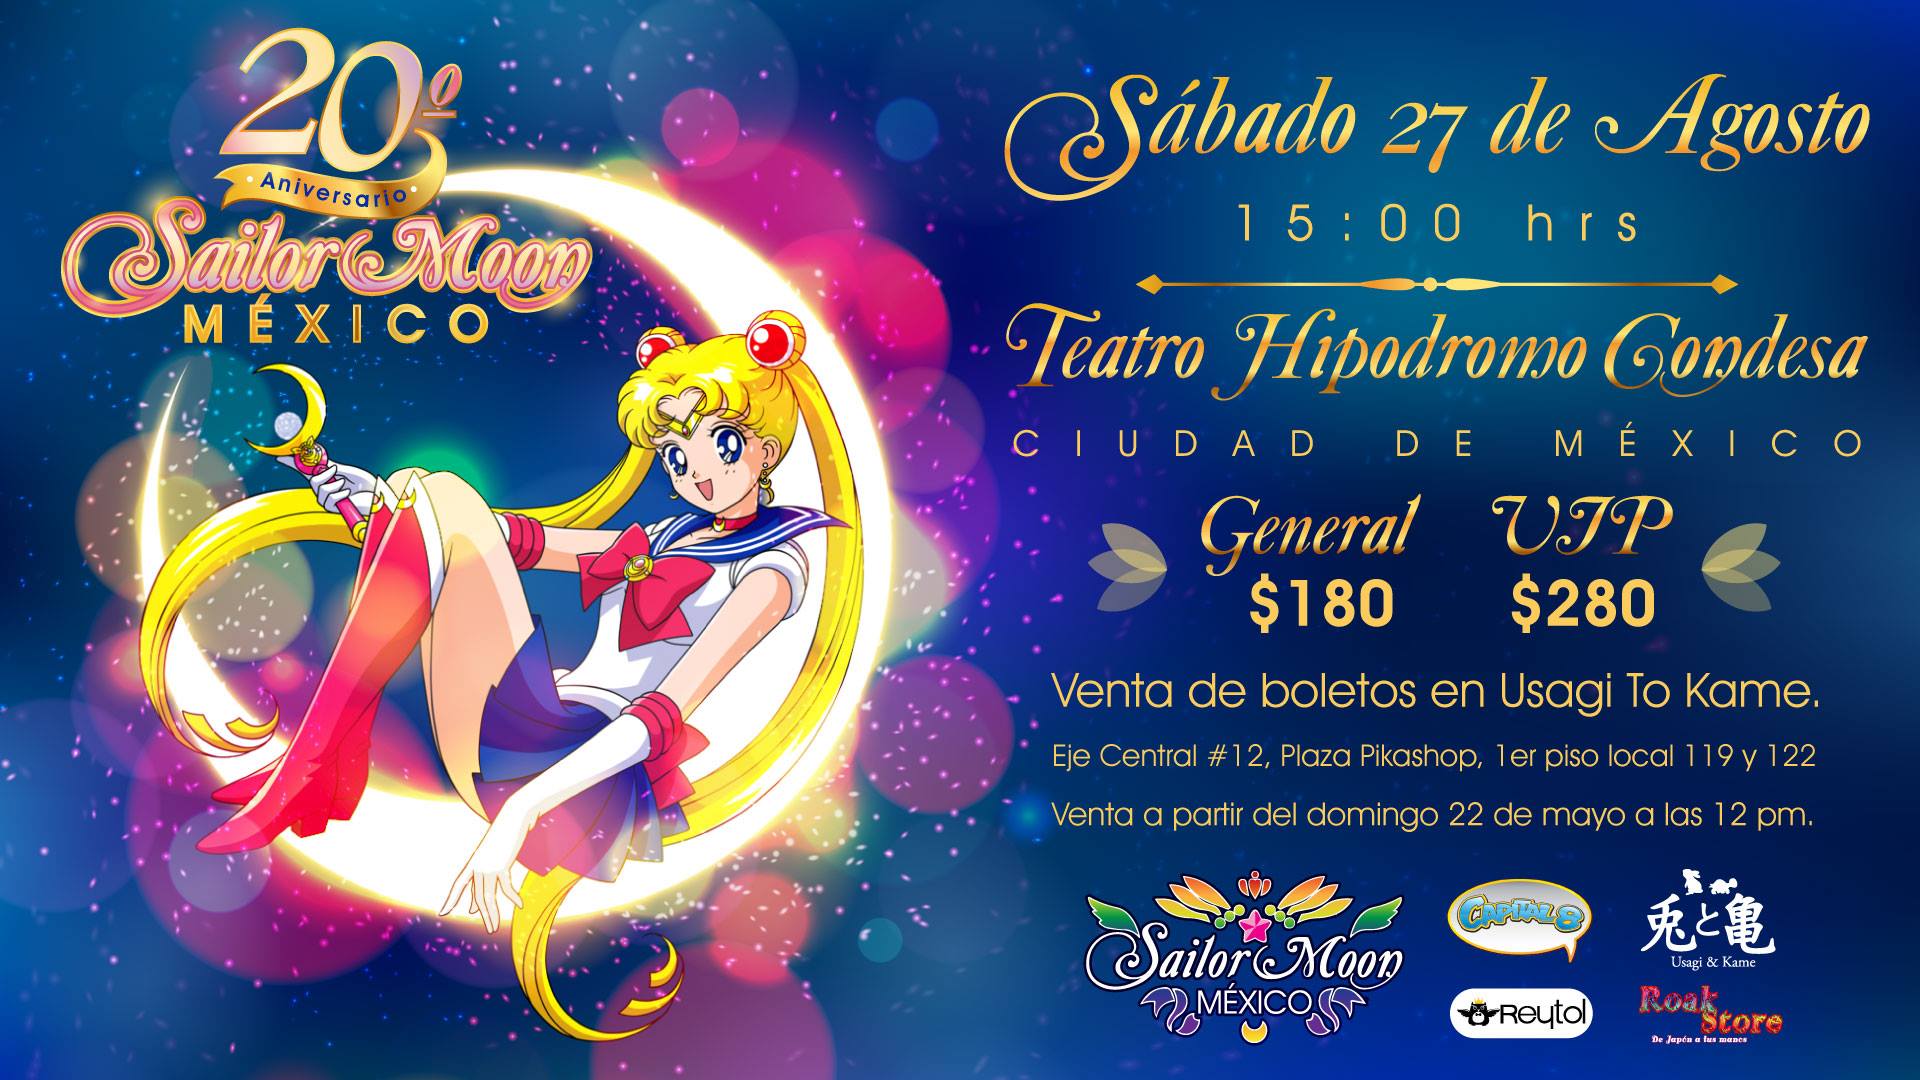 Ago16 - Sailor Moon